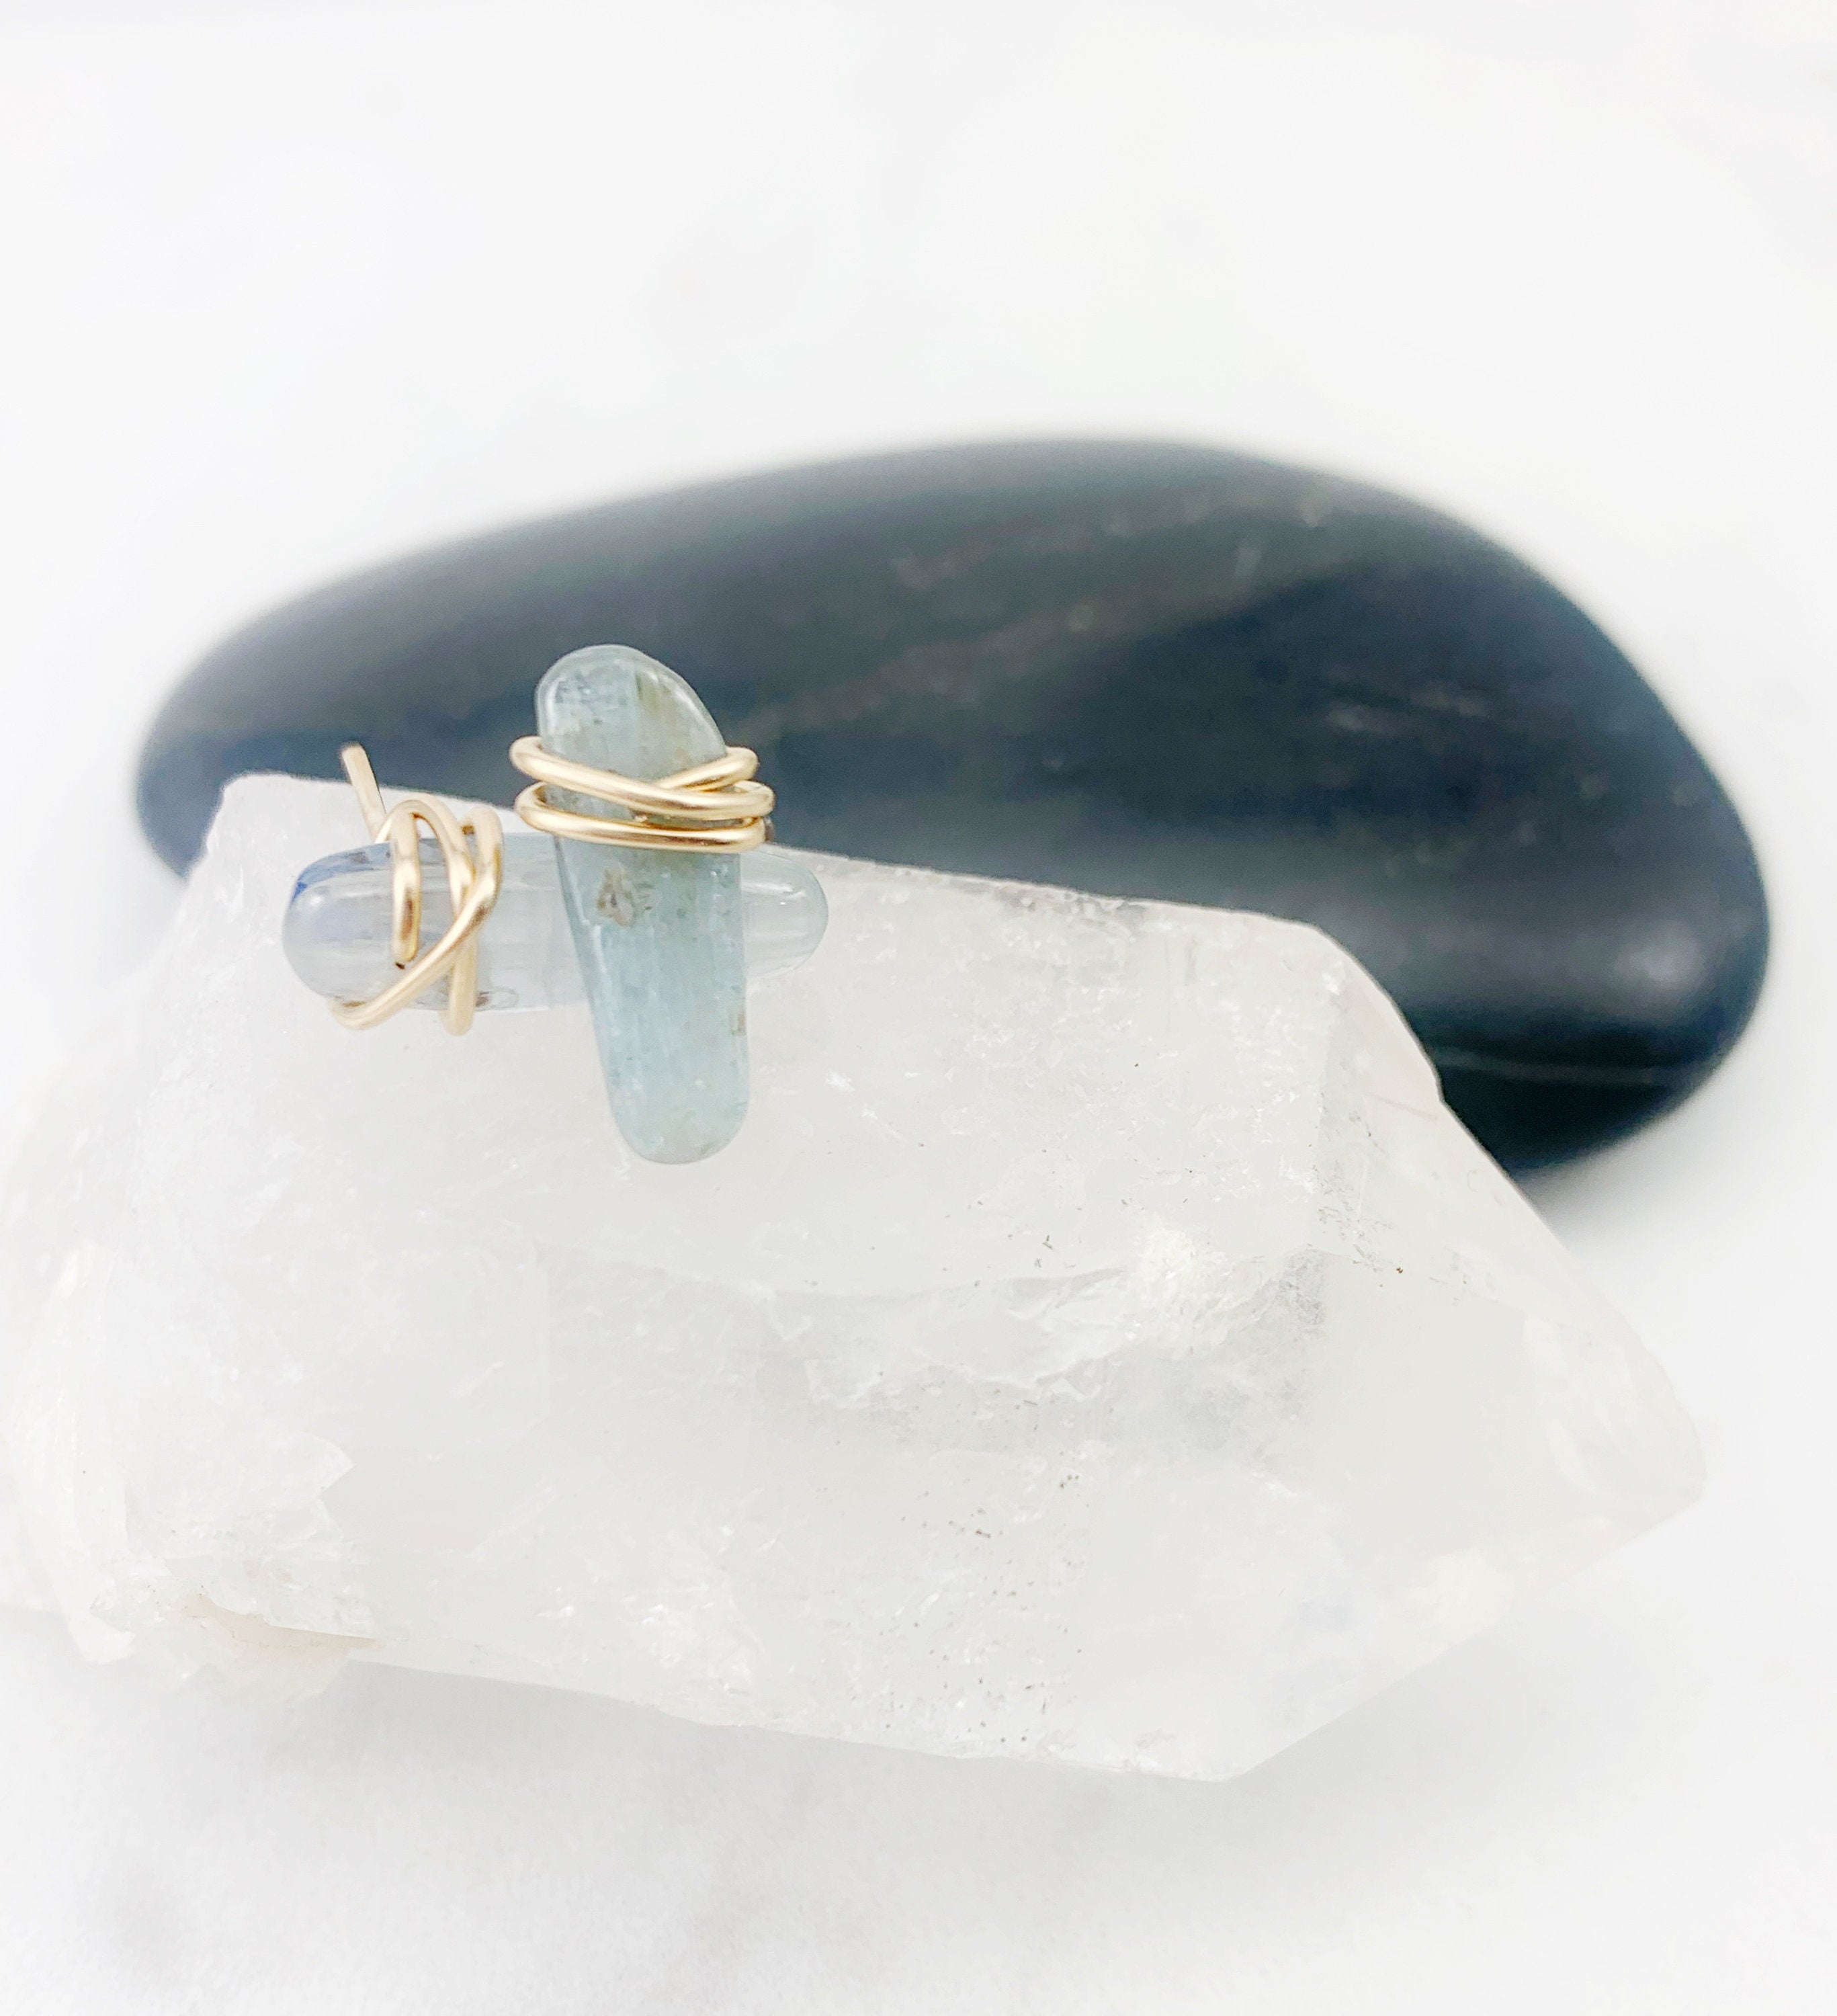 Kyanite Gemstone and 14k Gold Stud Earrings, gemstone earrings, blue stone earrings, stud earrings, wire wrapped earrings